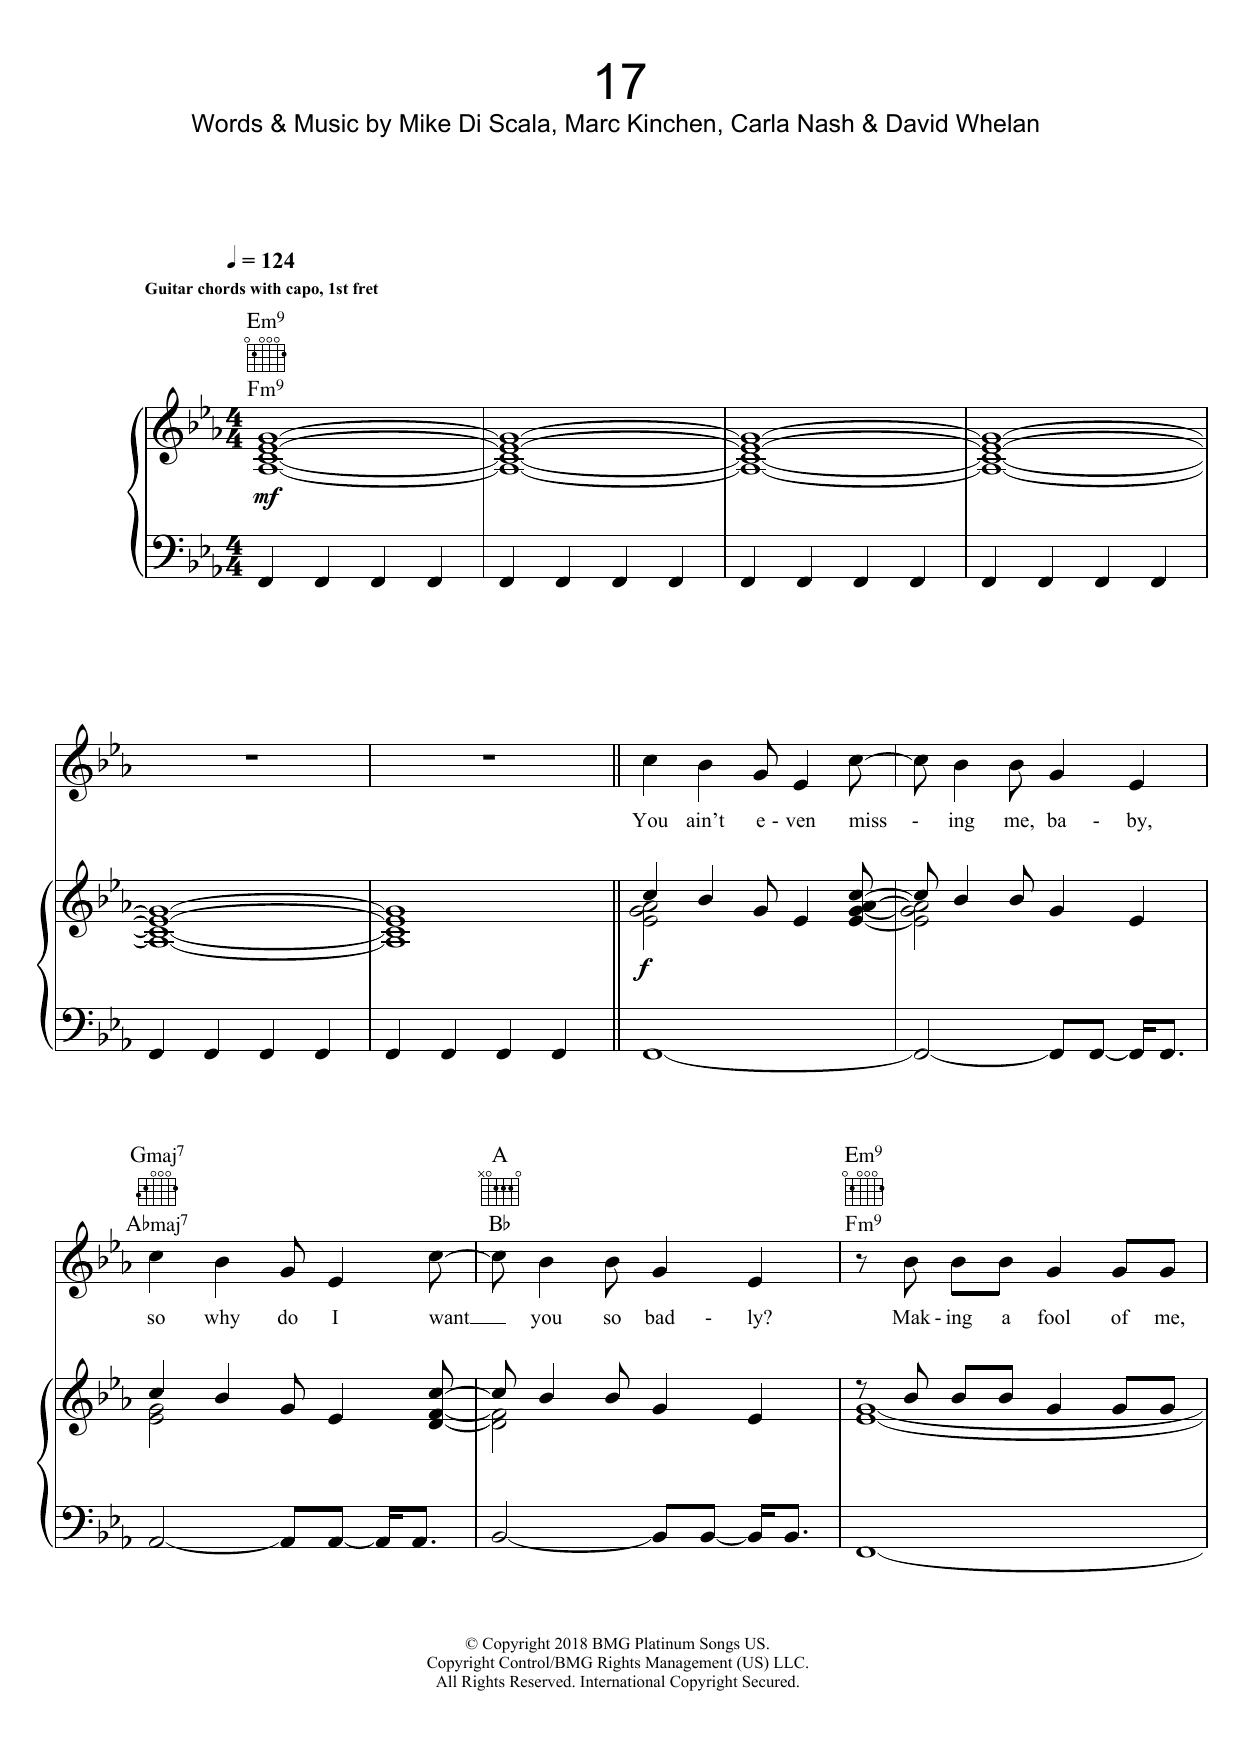 MK 17 Sheet Music Notes & Chords for Beginner Ukulele - Download or Print PDF